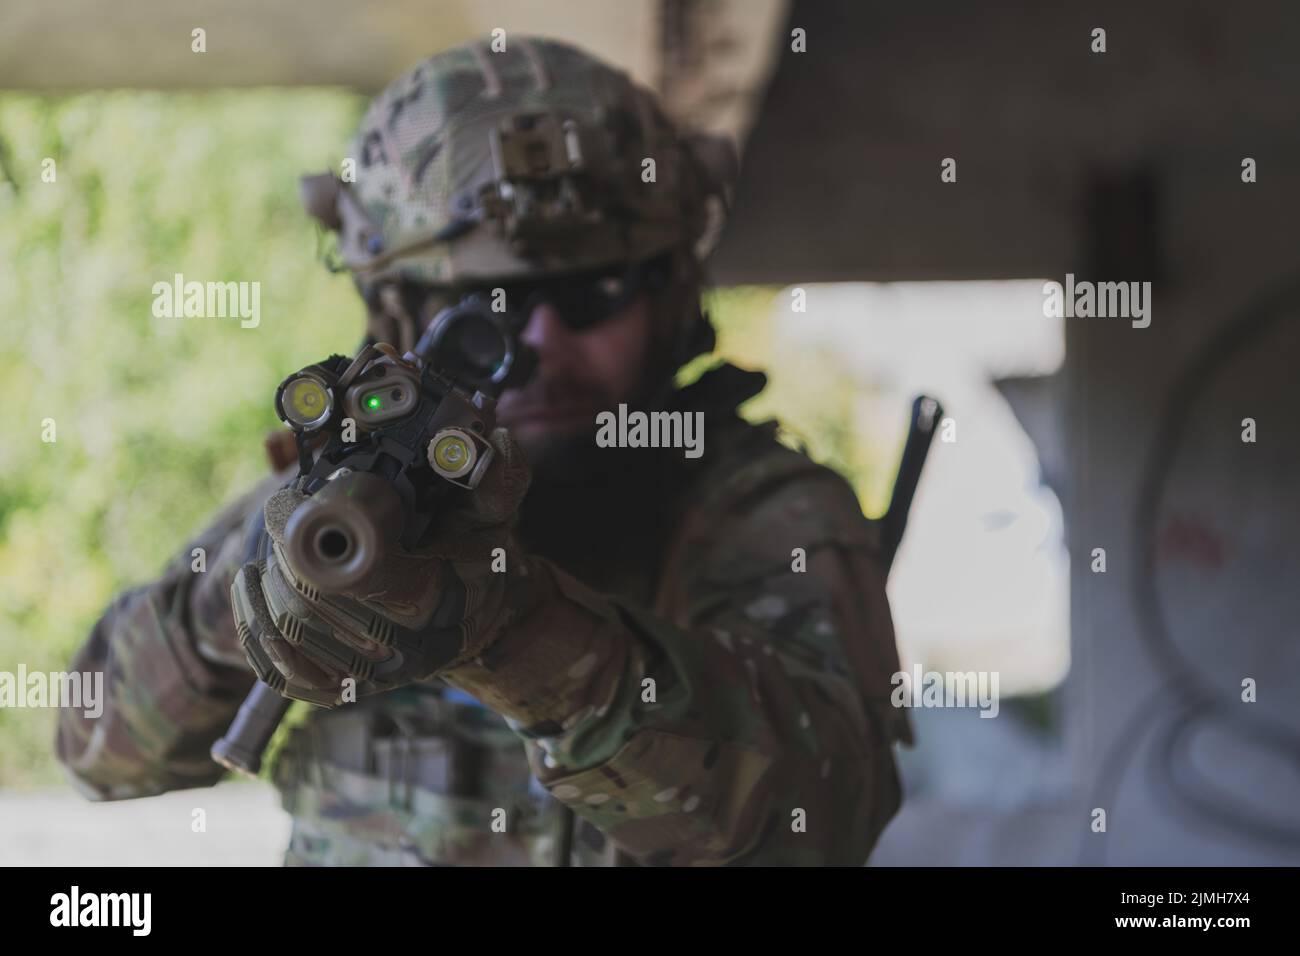 Un soldado barbudo en el uniforme de las fuerzas especiales en acción militar peligrosa en una zona enemiga peligrosa. Enfoque selectivo. Fotografía de alta calidad Foto de stock